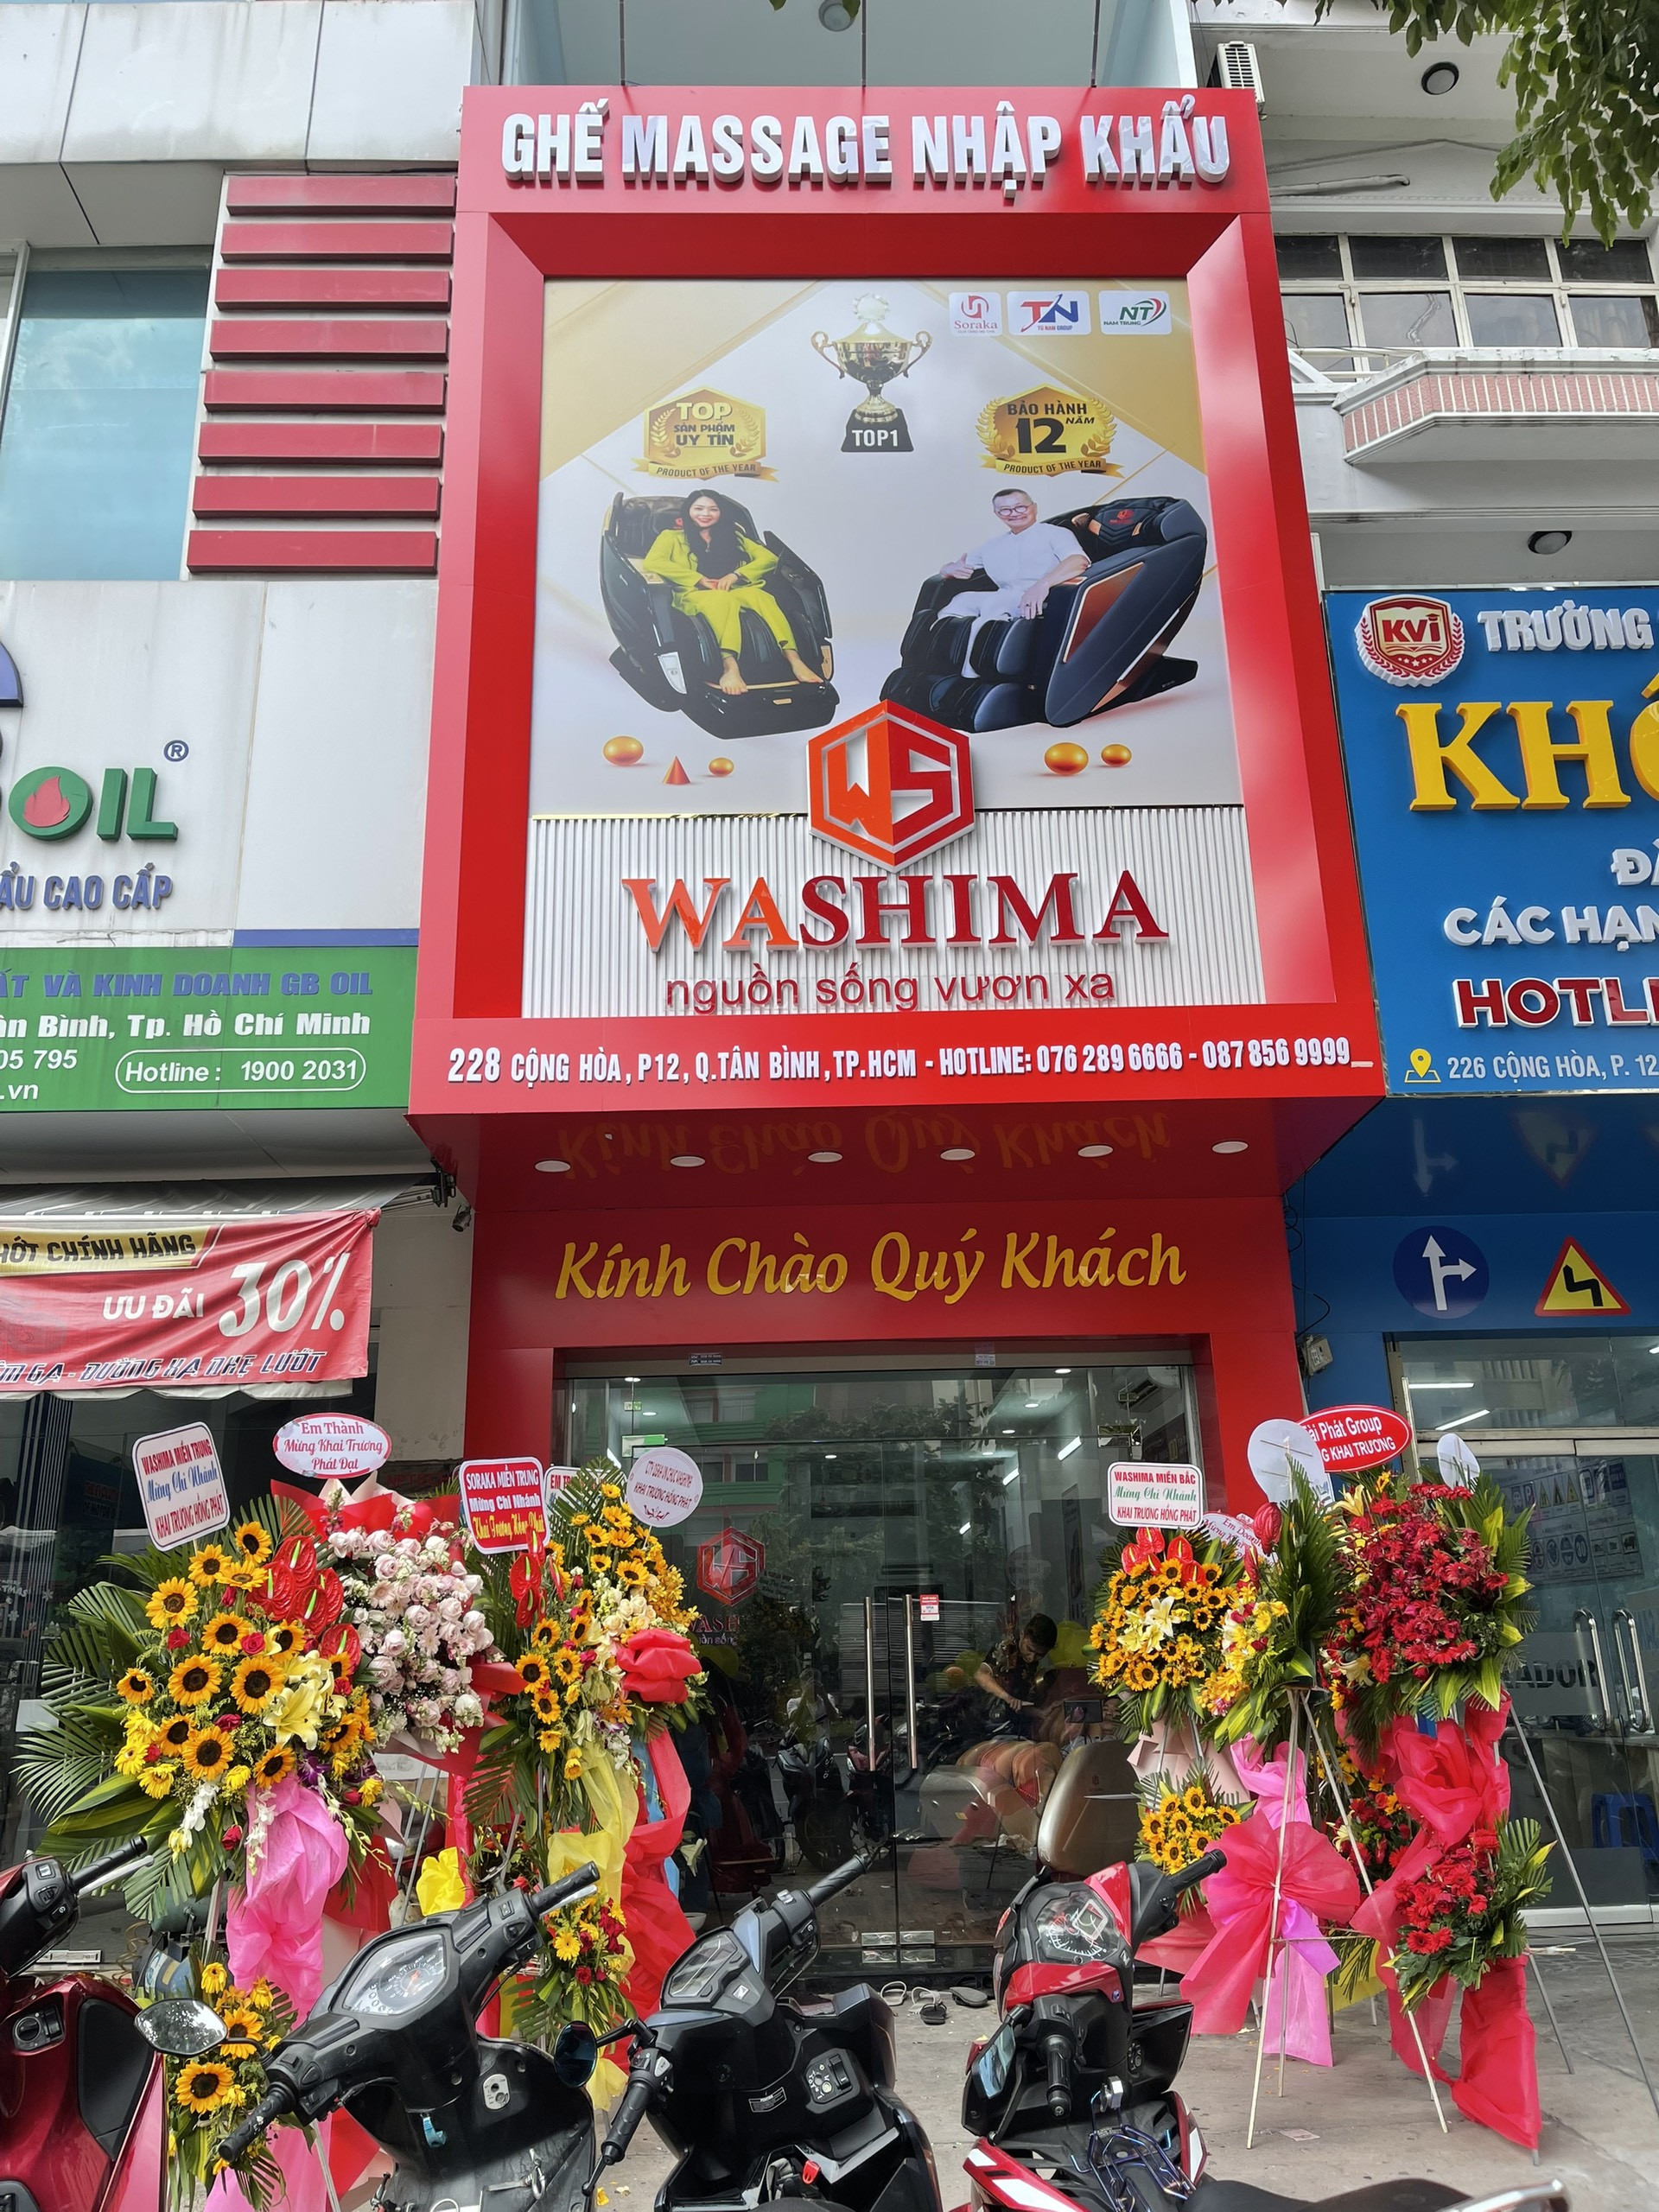 Washima khai trương chi nhánh tại thị trường miền Nam khu vực quận Tân Bình